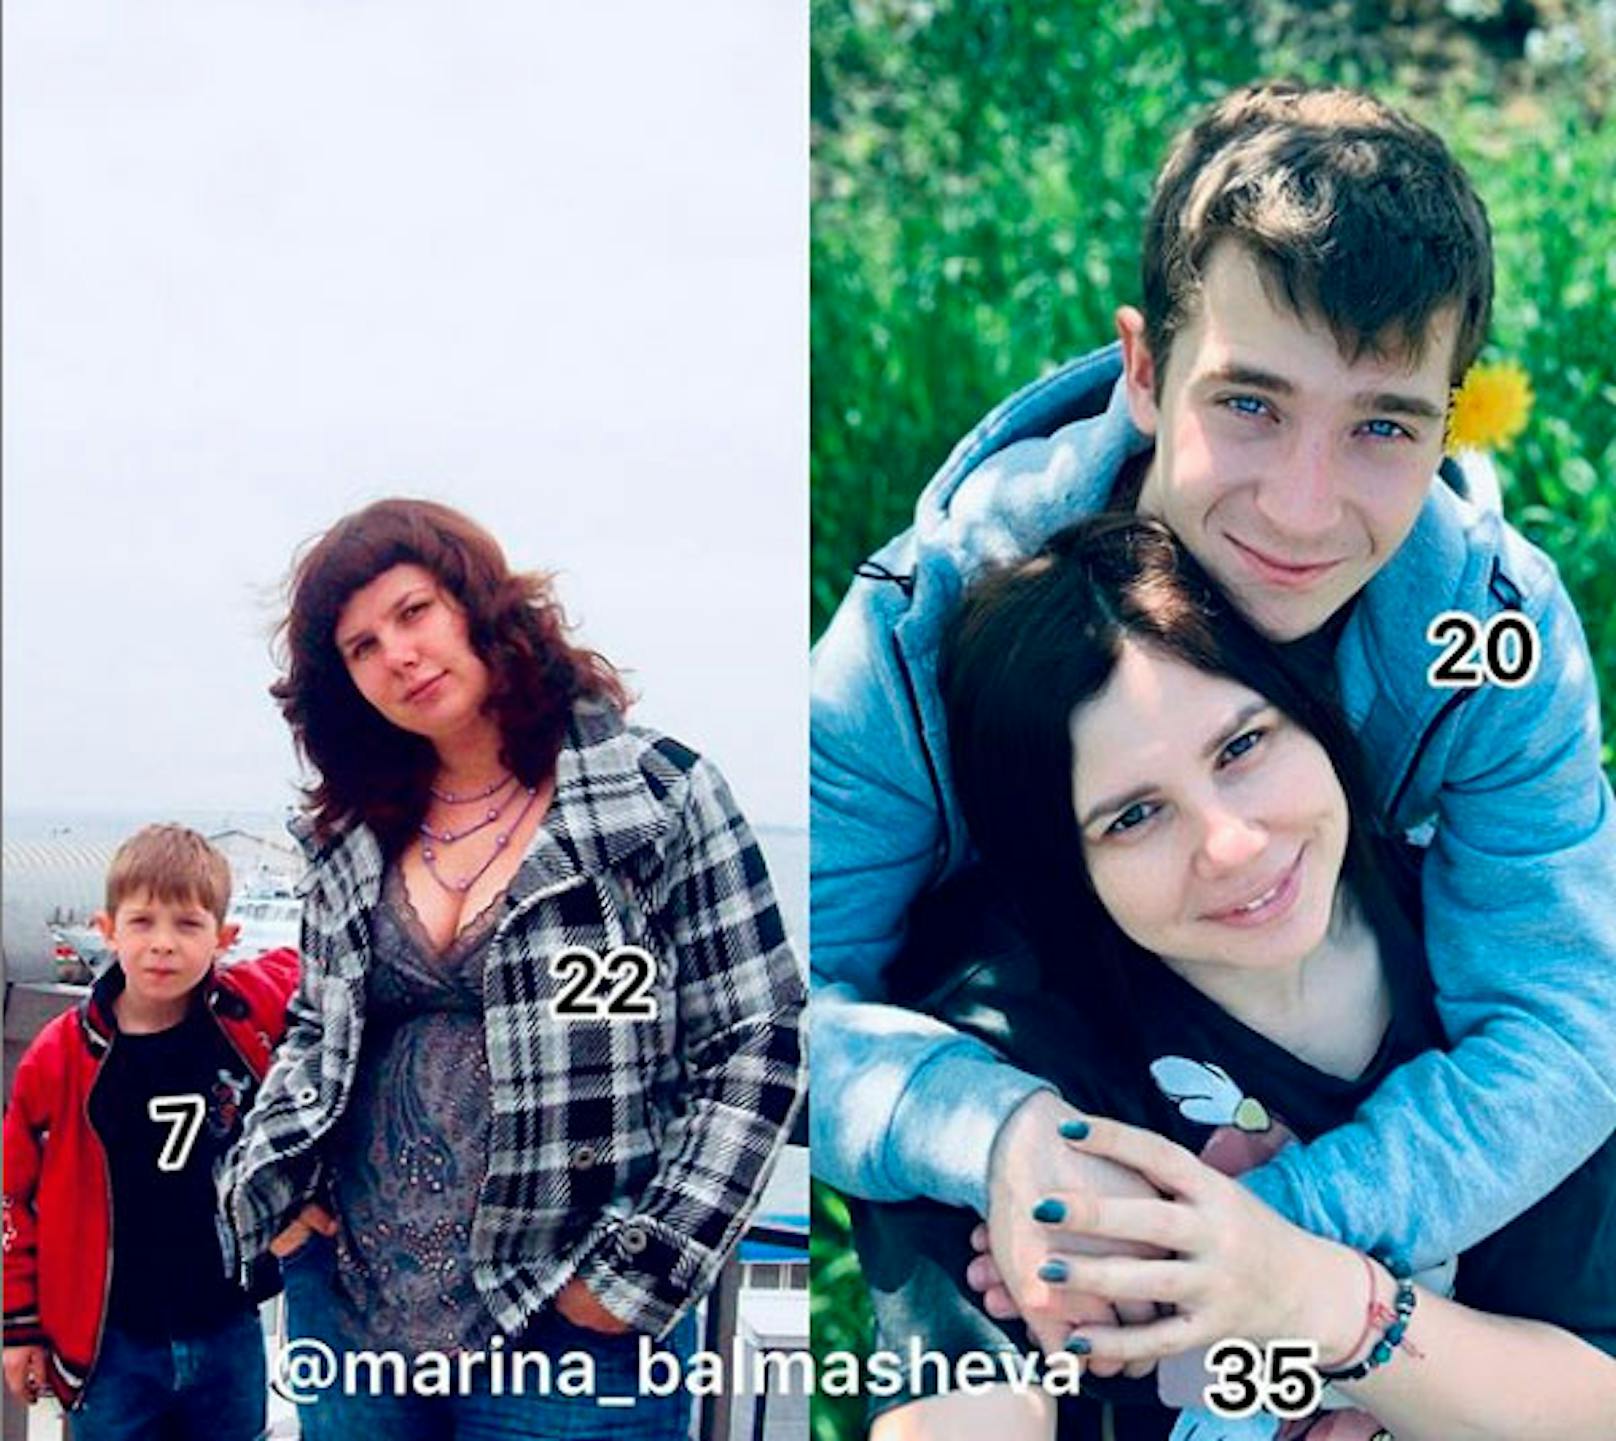 Mit einem 13 Jahre alten Foto, das sie mit 22 und ihren Stiefsohn mit 7 zeigt, sorgte sie für Wirbel.